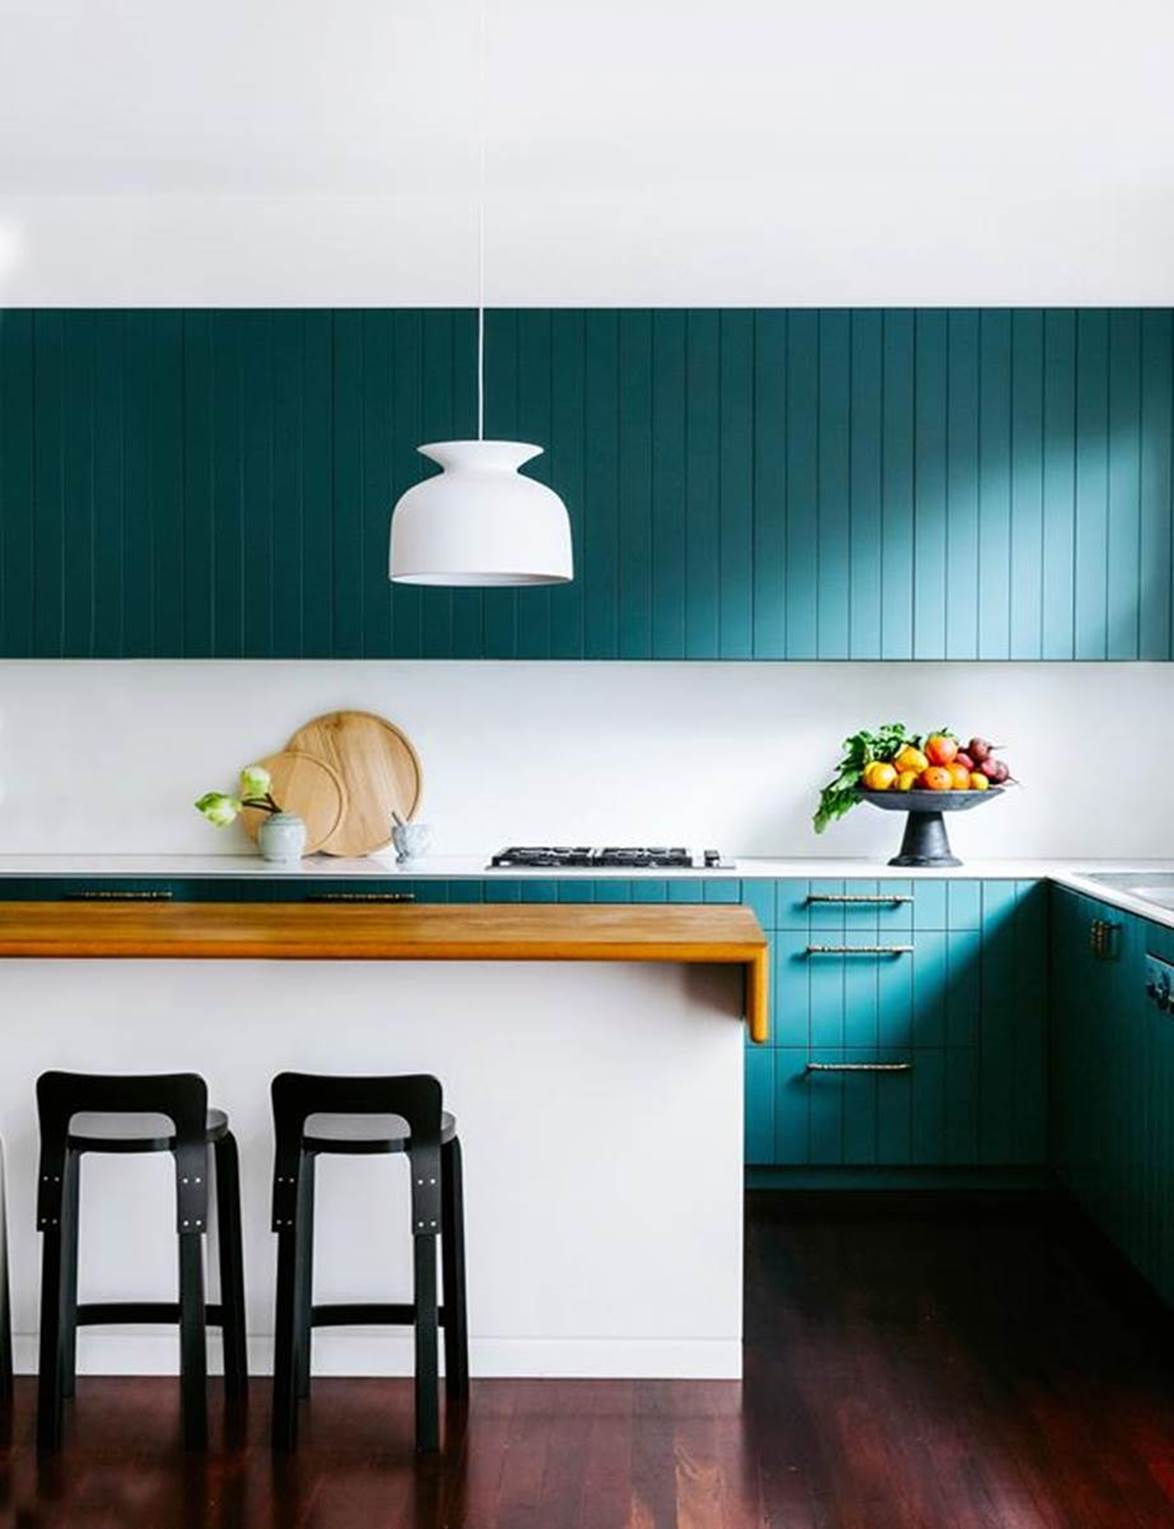 Cần chi cầu kỳ, kiểu cách, tô điểm chút sắc màu thôi cũng đủ khiến căn bếp gia đình xinh ngất ngây - Ảnh 8.